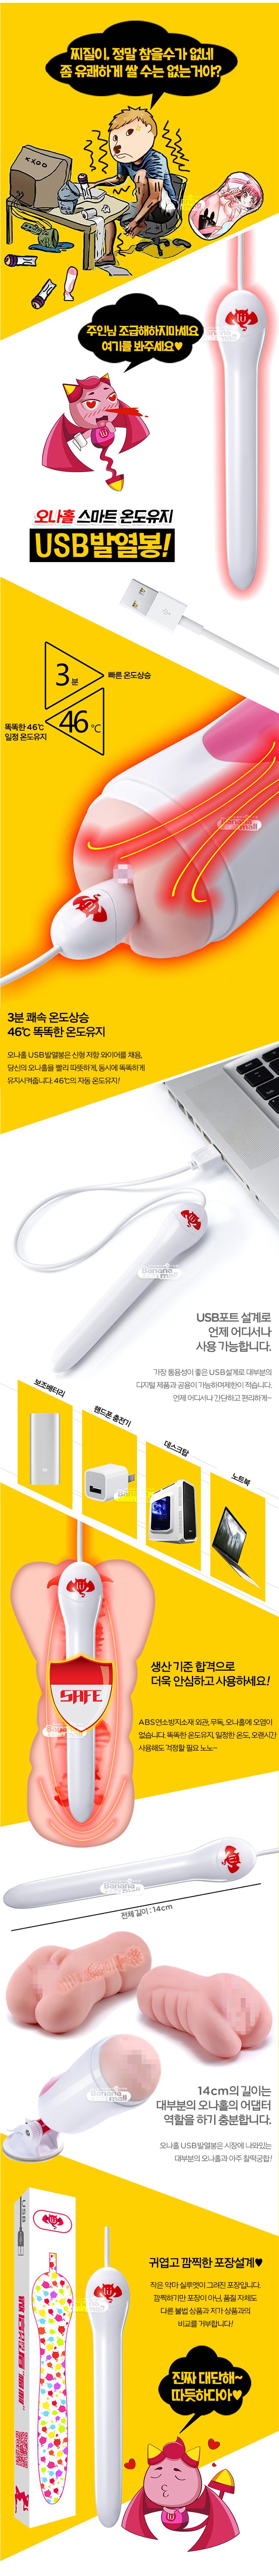 [오나홀 워머] USB 스마트 워머(Lulubei USB Smart Heating Rods) - 루루베이